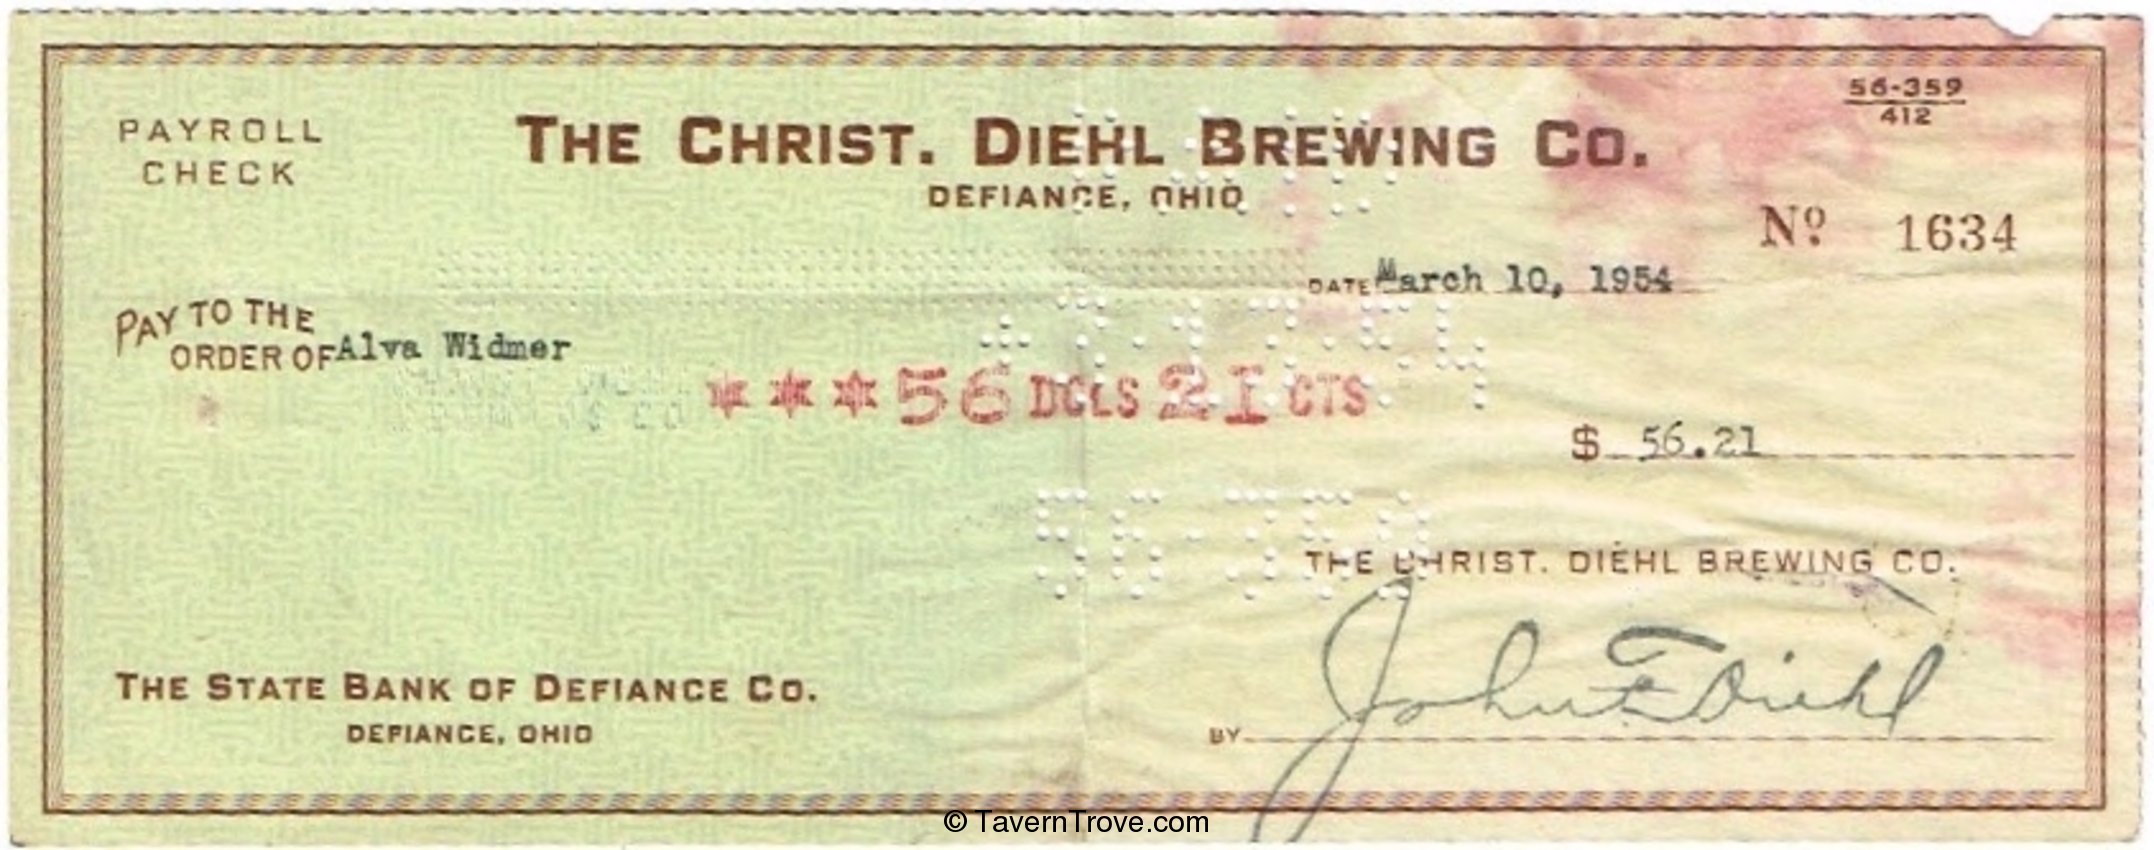 Christ. Diehl Brewing Co.